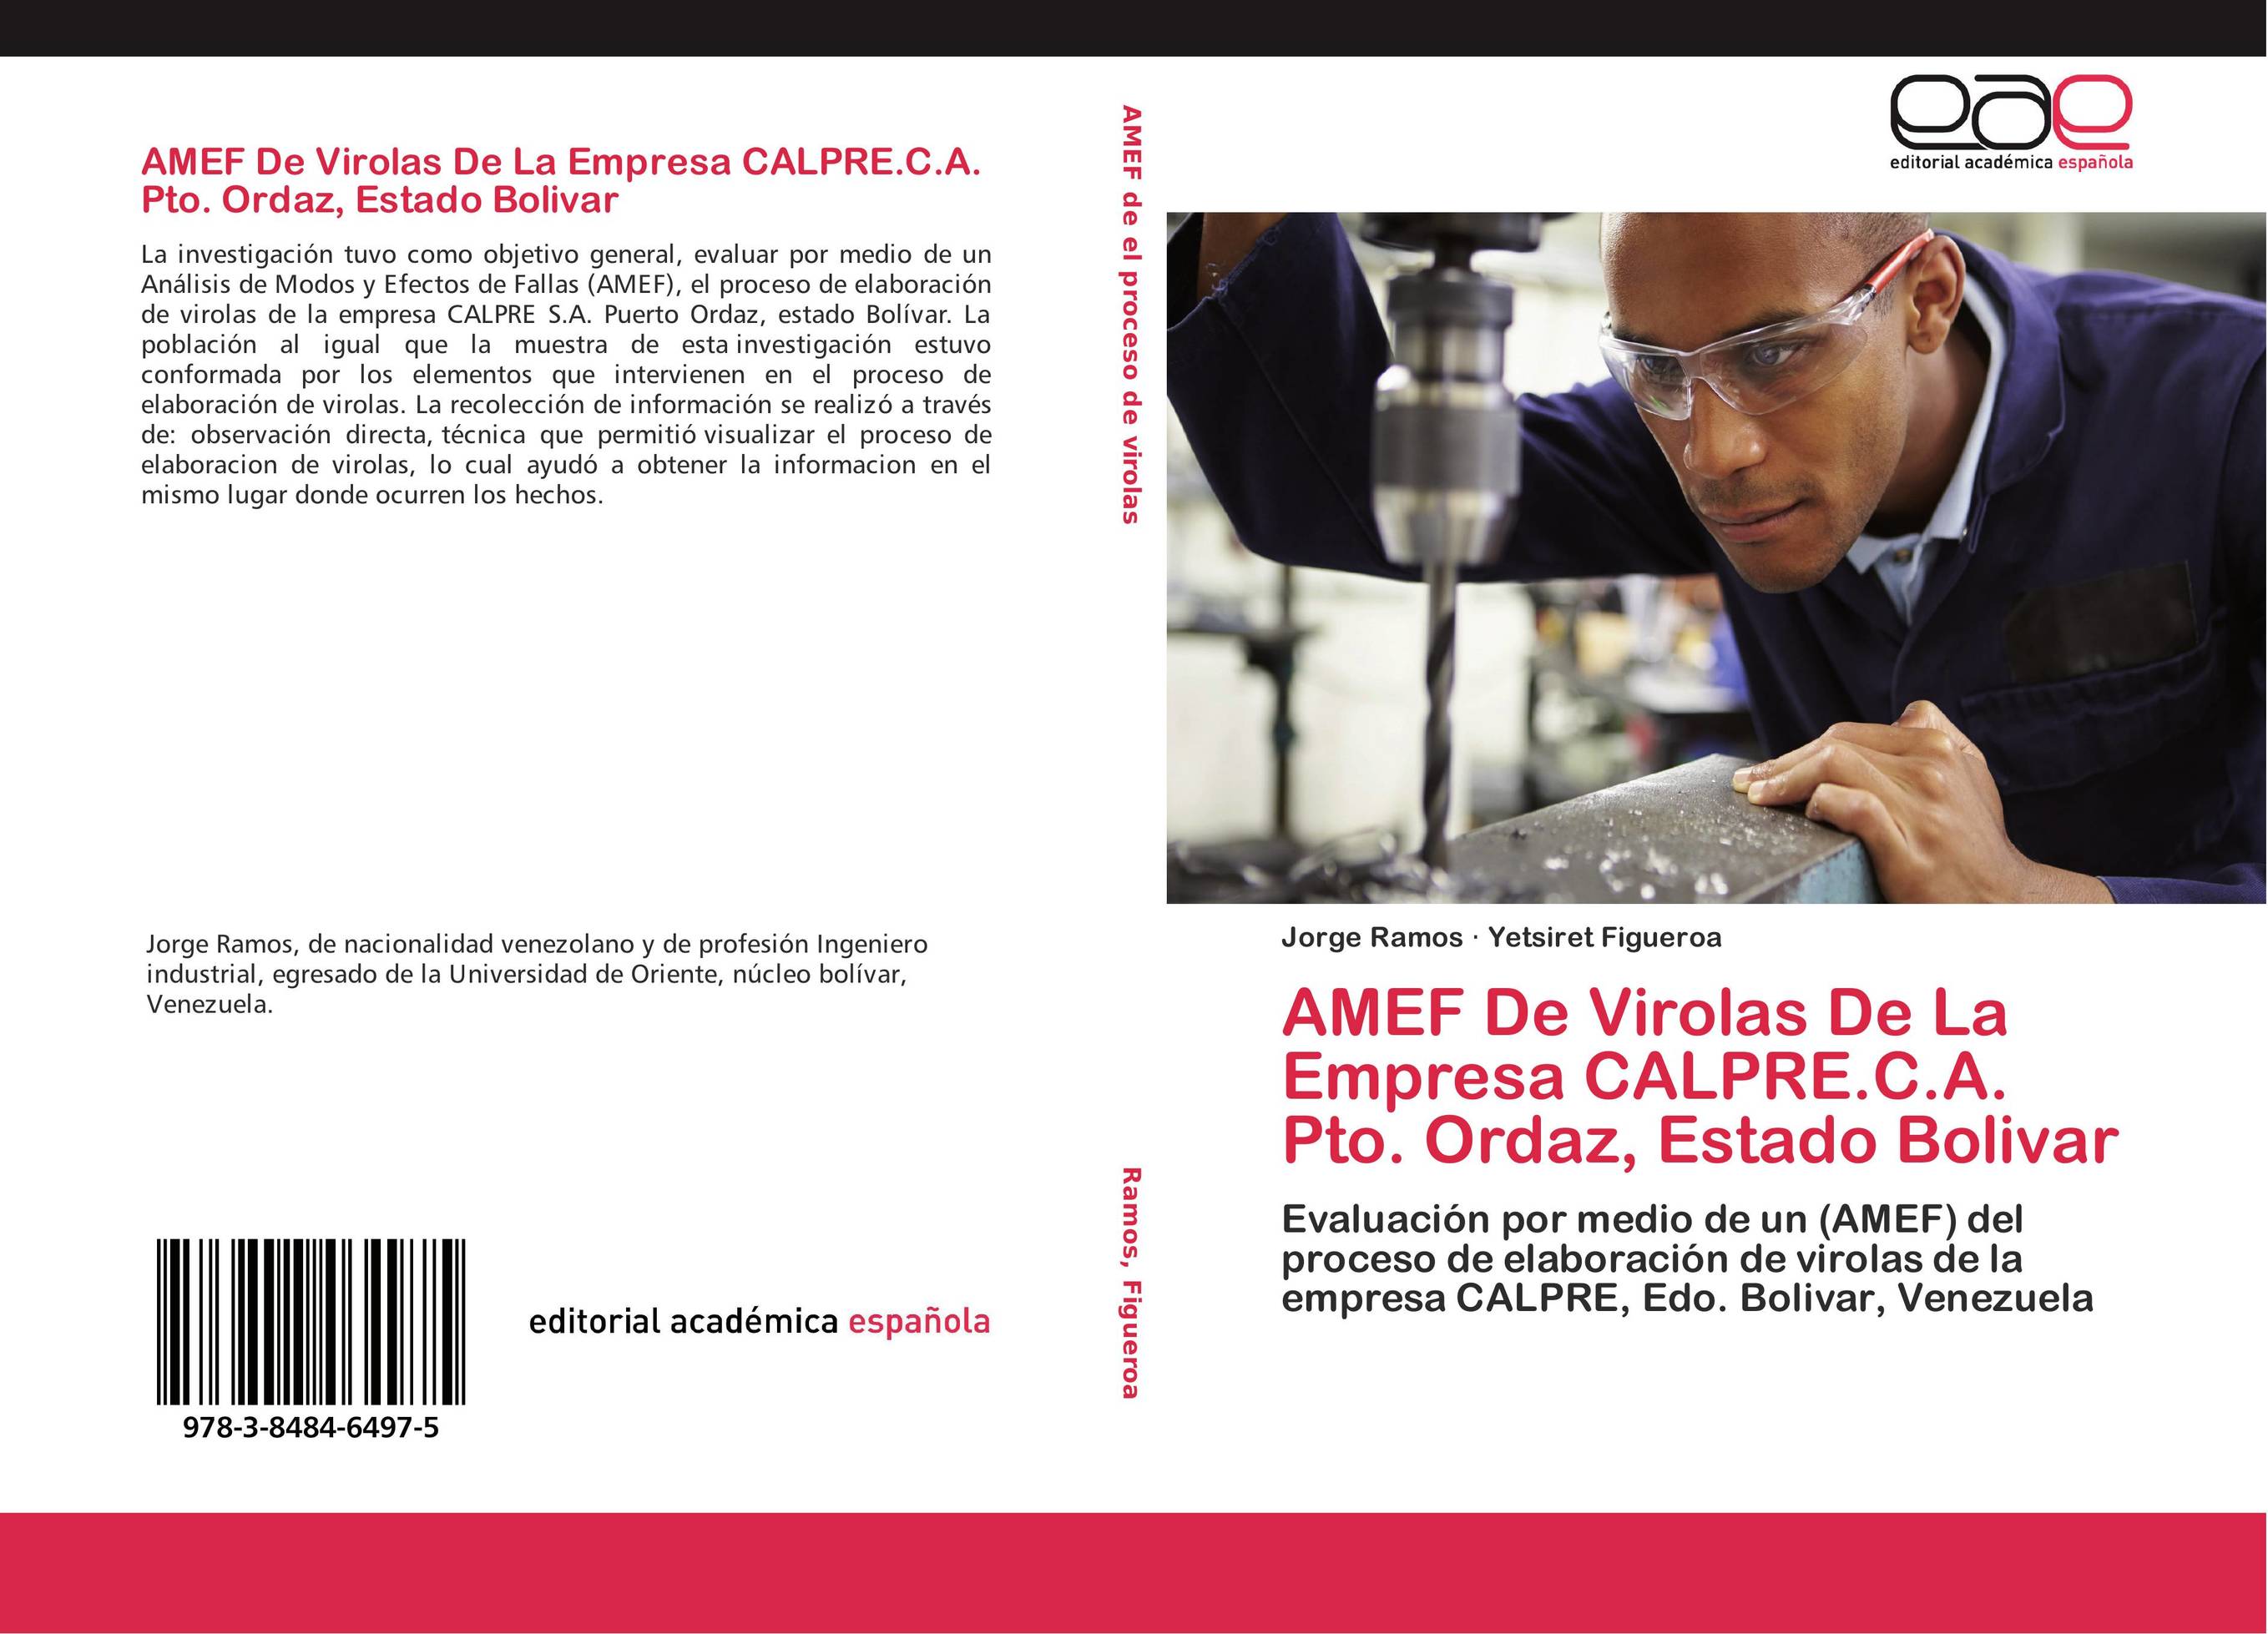 AMEF De Virolas De La Empresa CALPRE.C.A. Pto. Ordaz, Estado Bolivar